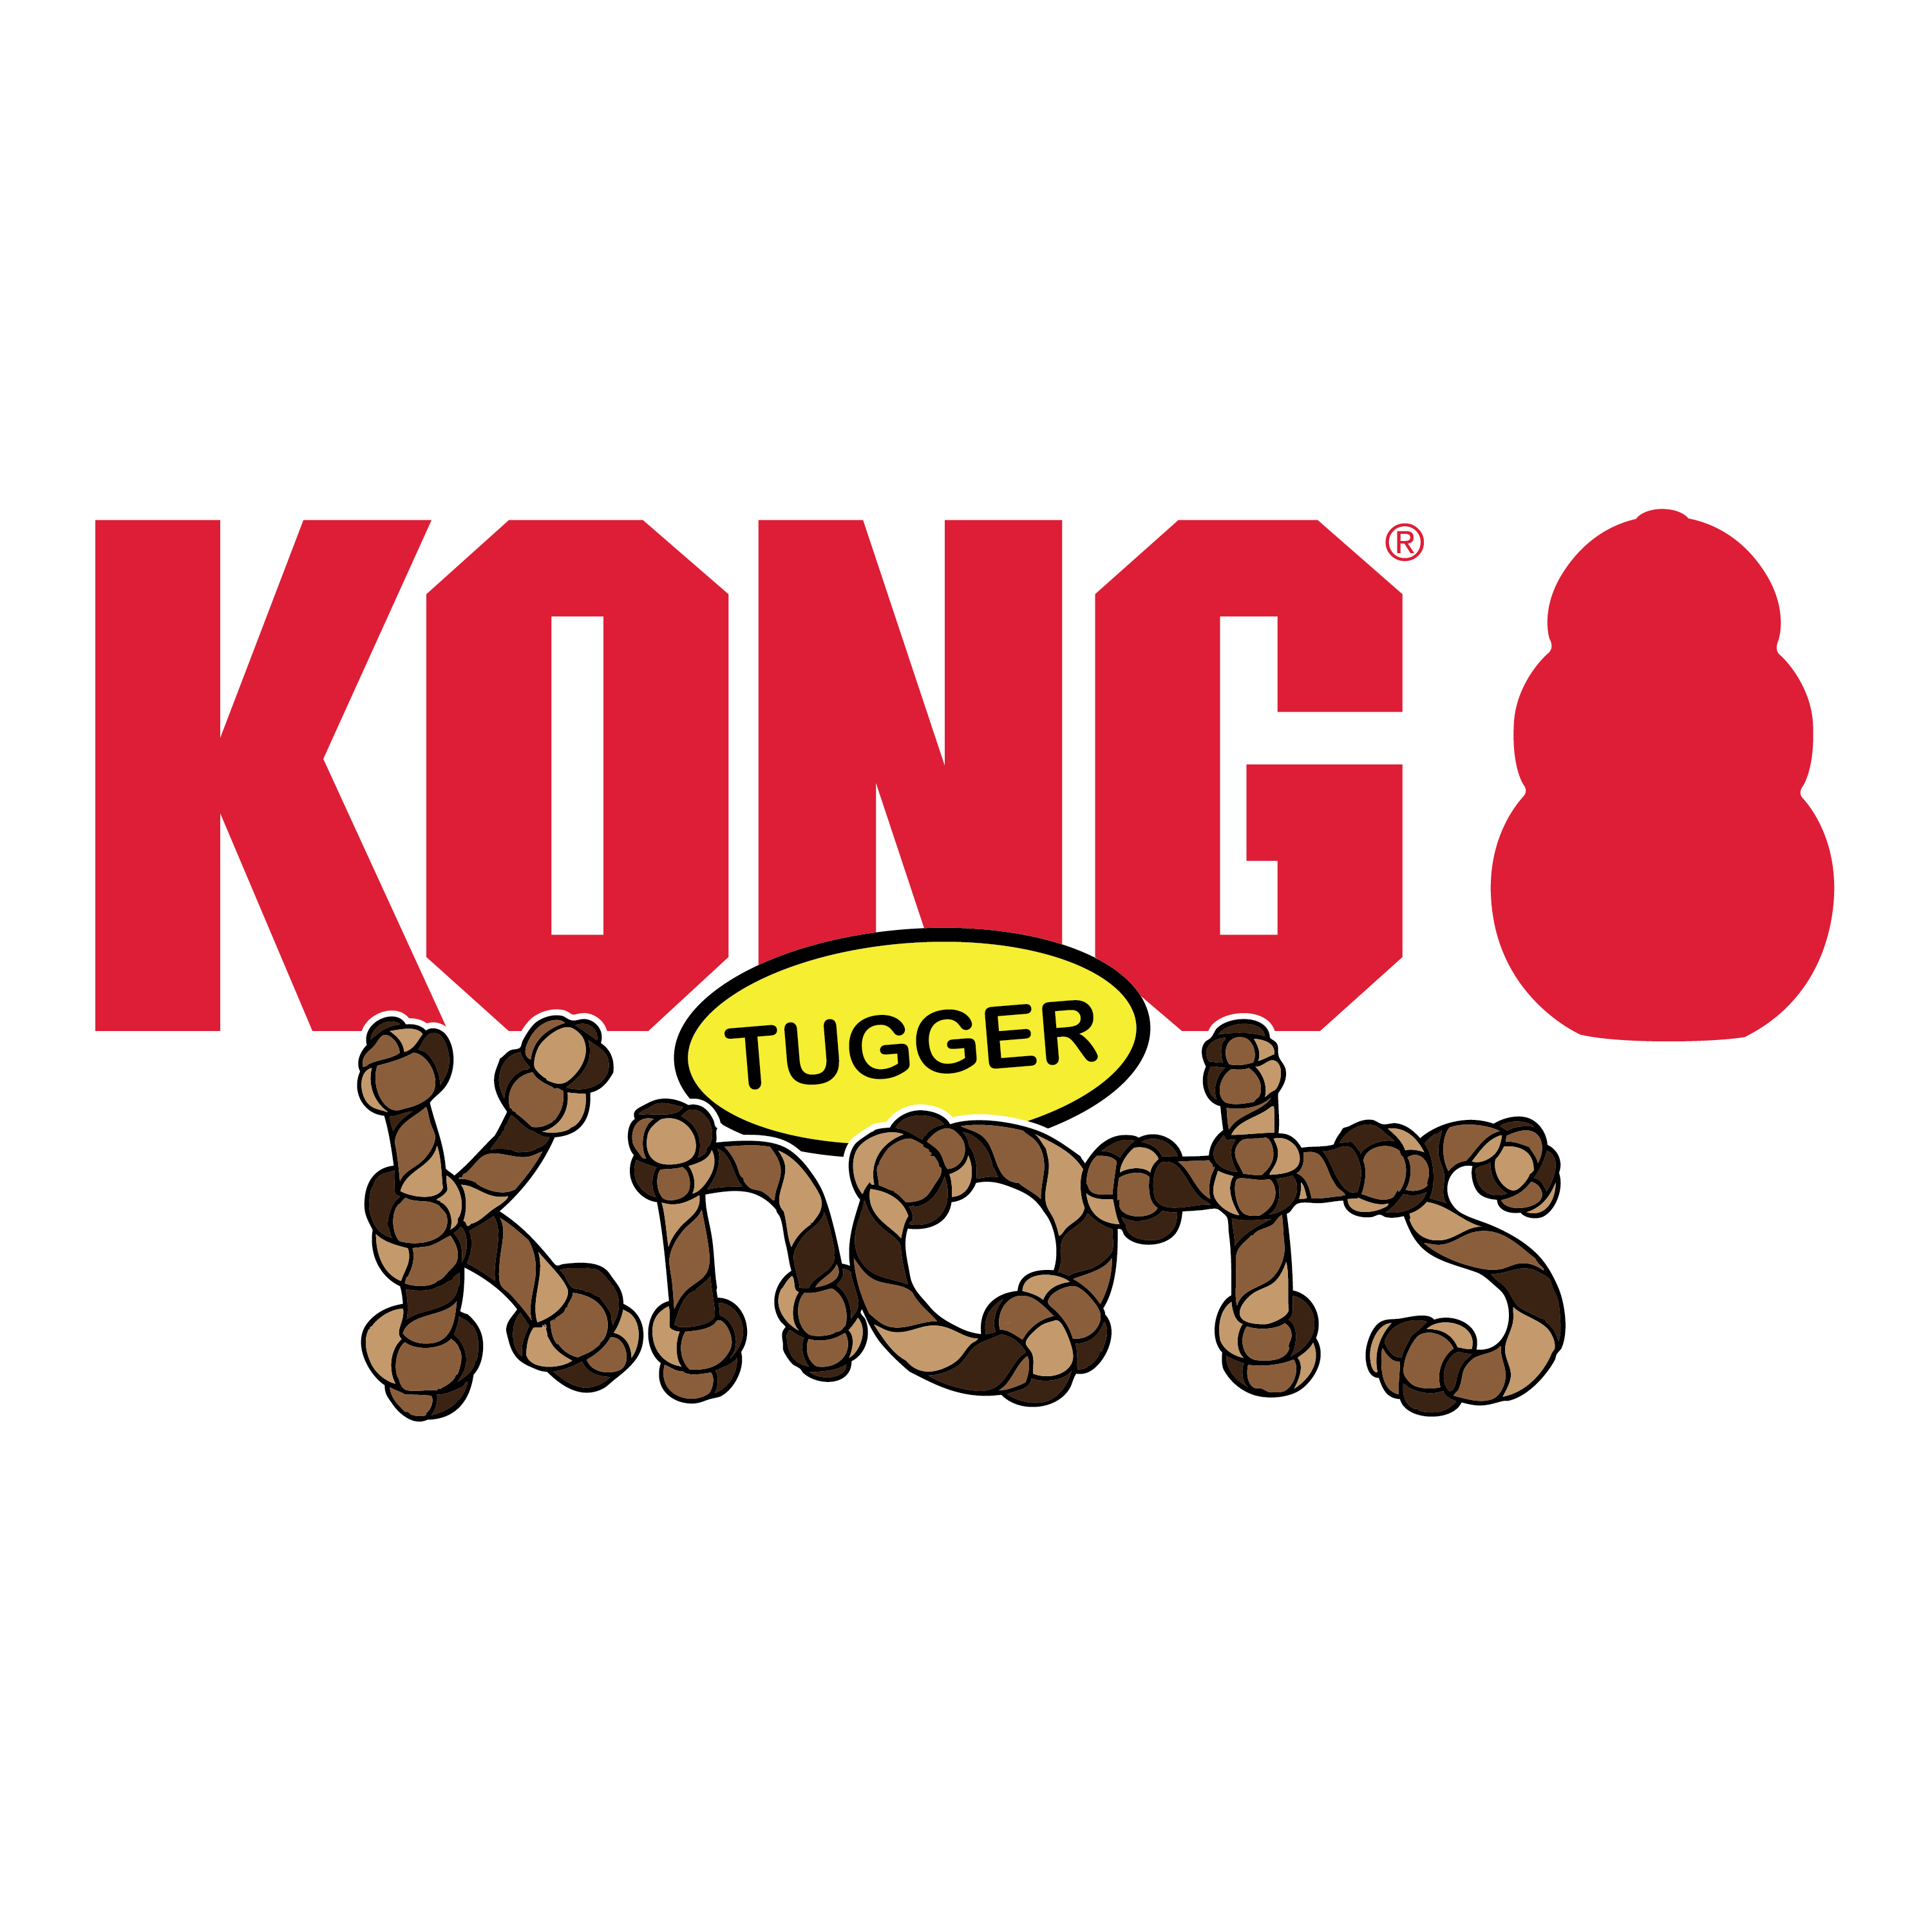 Tugger Knots Frog alt1 product image